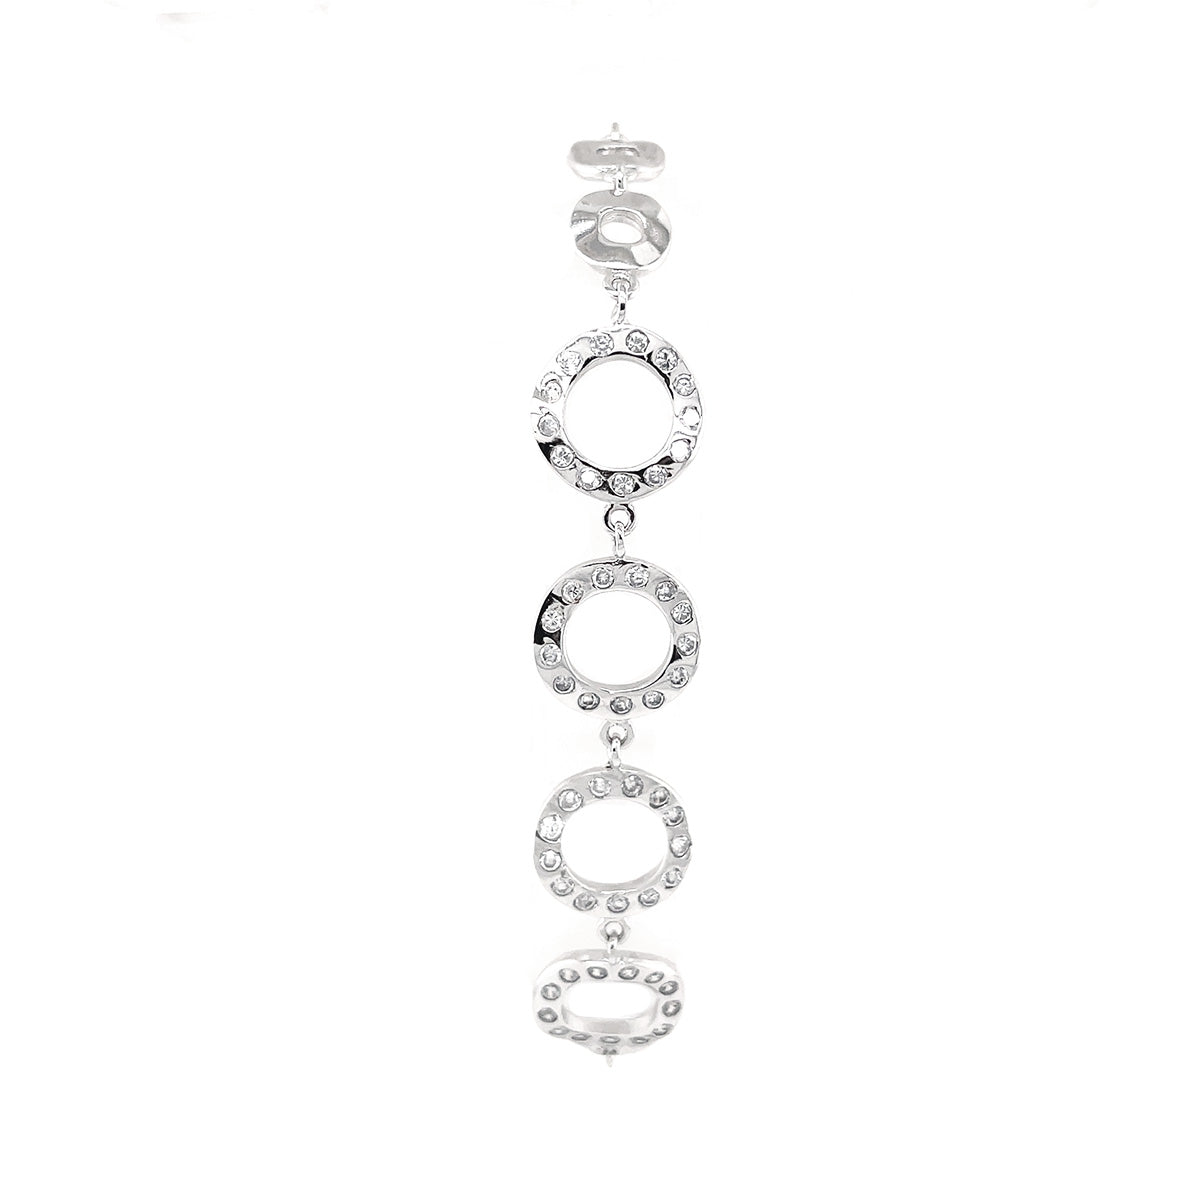 BMB80017 - Round Square + Ring Modeling - Bracelet